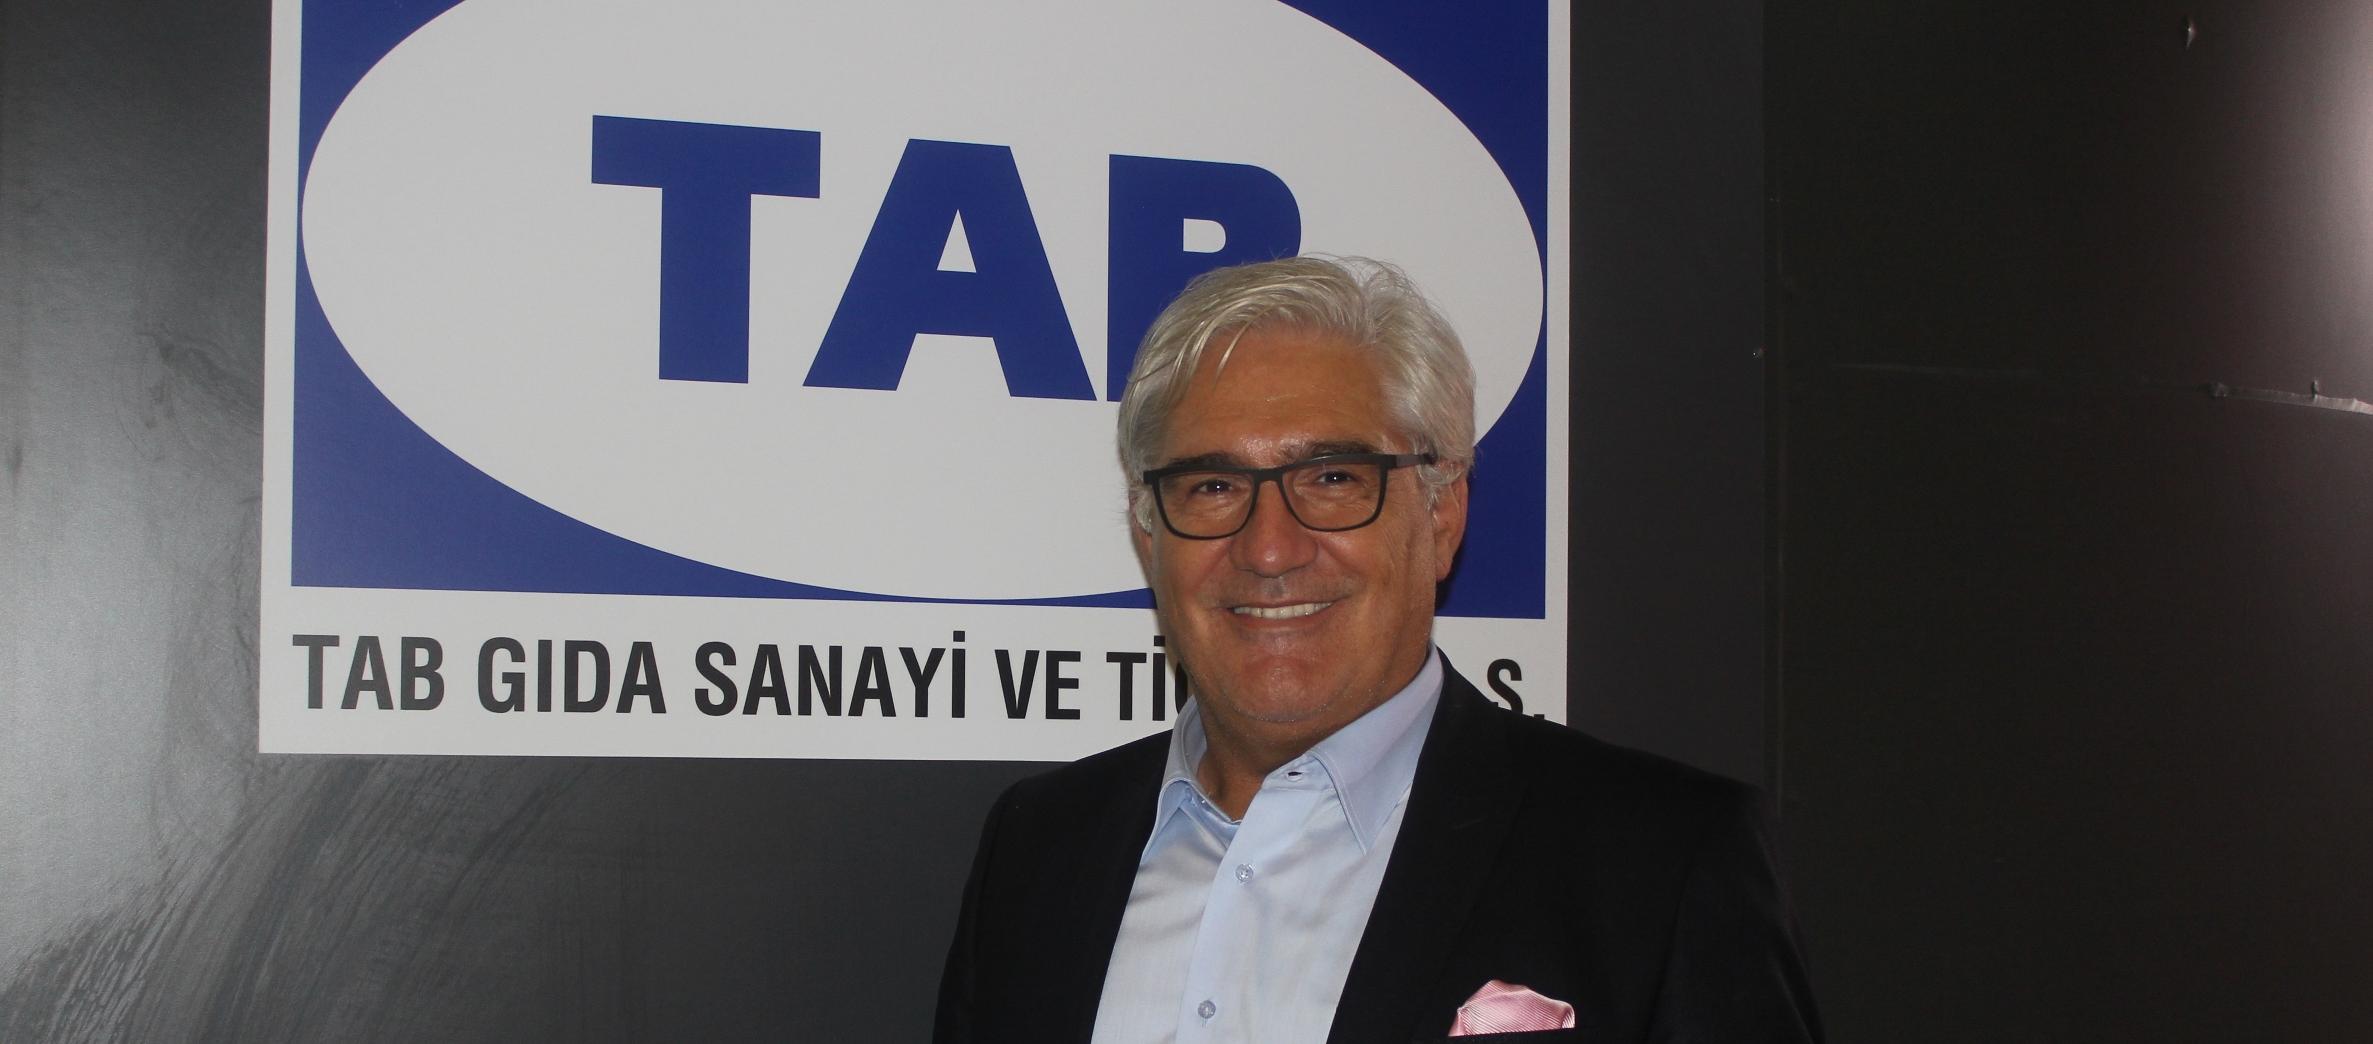 İstanbul Starcity AVM’ye Yeni Sbarro® Restoranı!